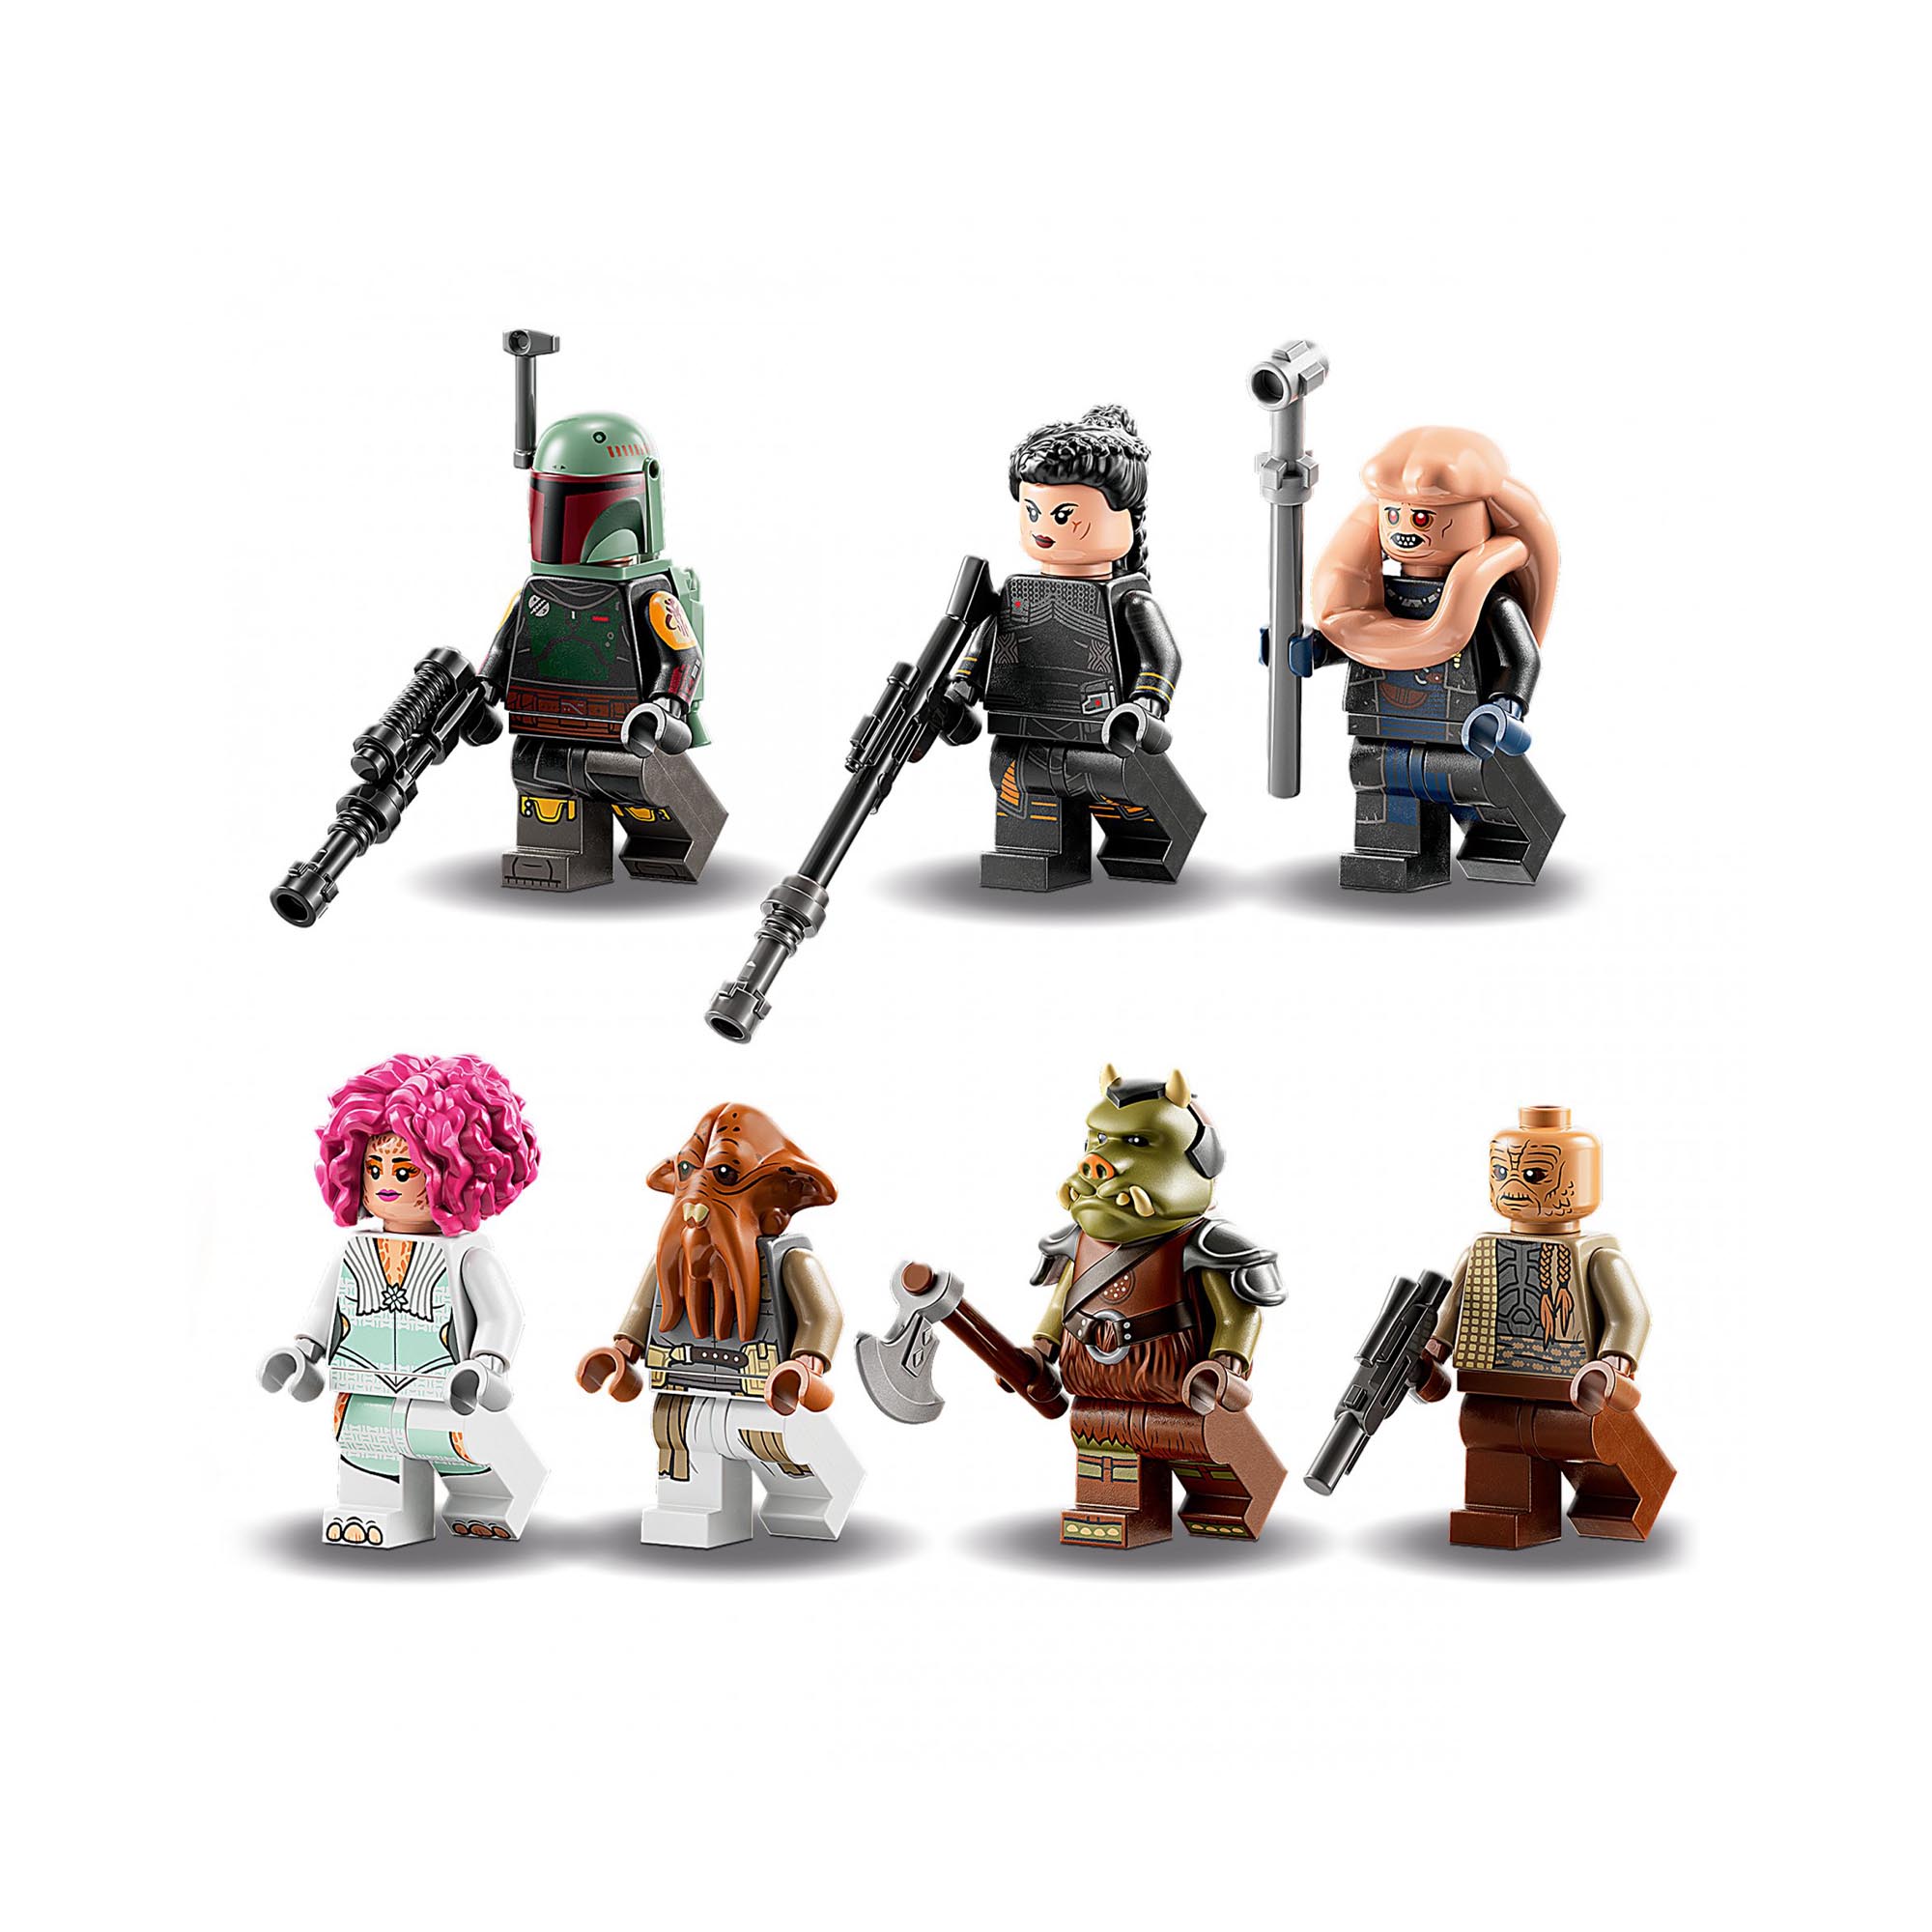 LEGO 75326 Star Wars La Sala del Trono di Boba Fett, Palazzo di Jabba con 7 Mini 75326, , large